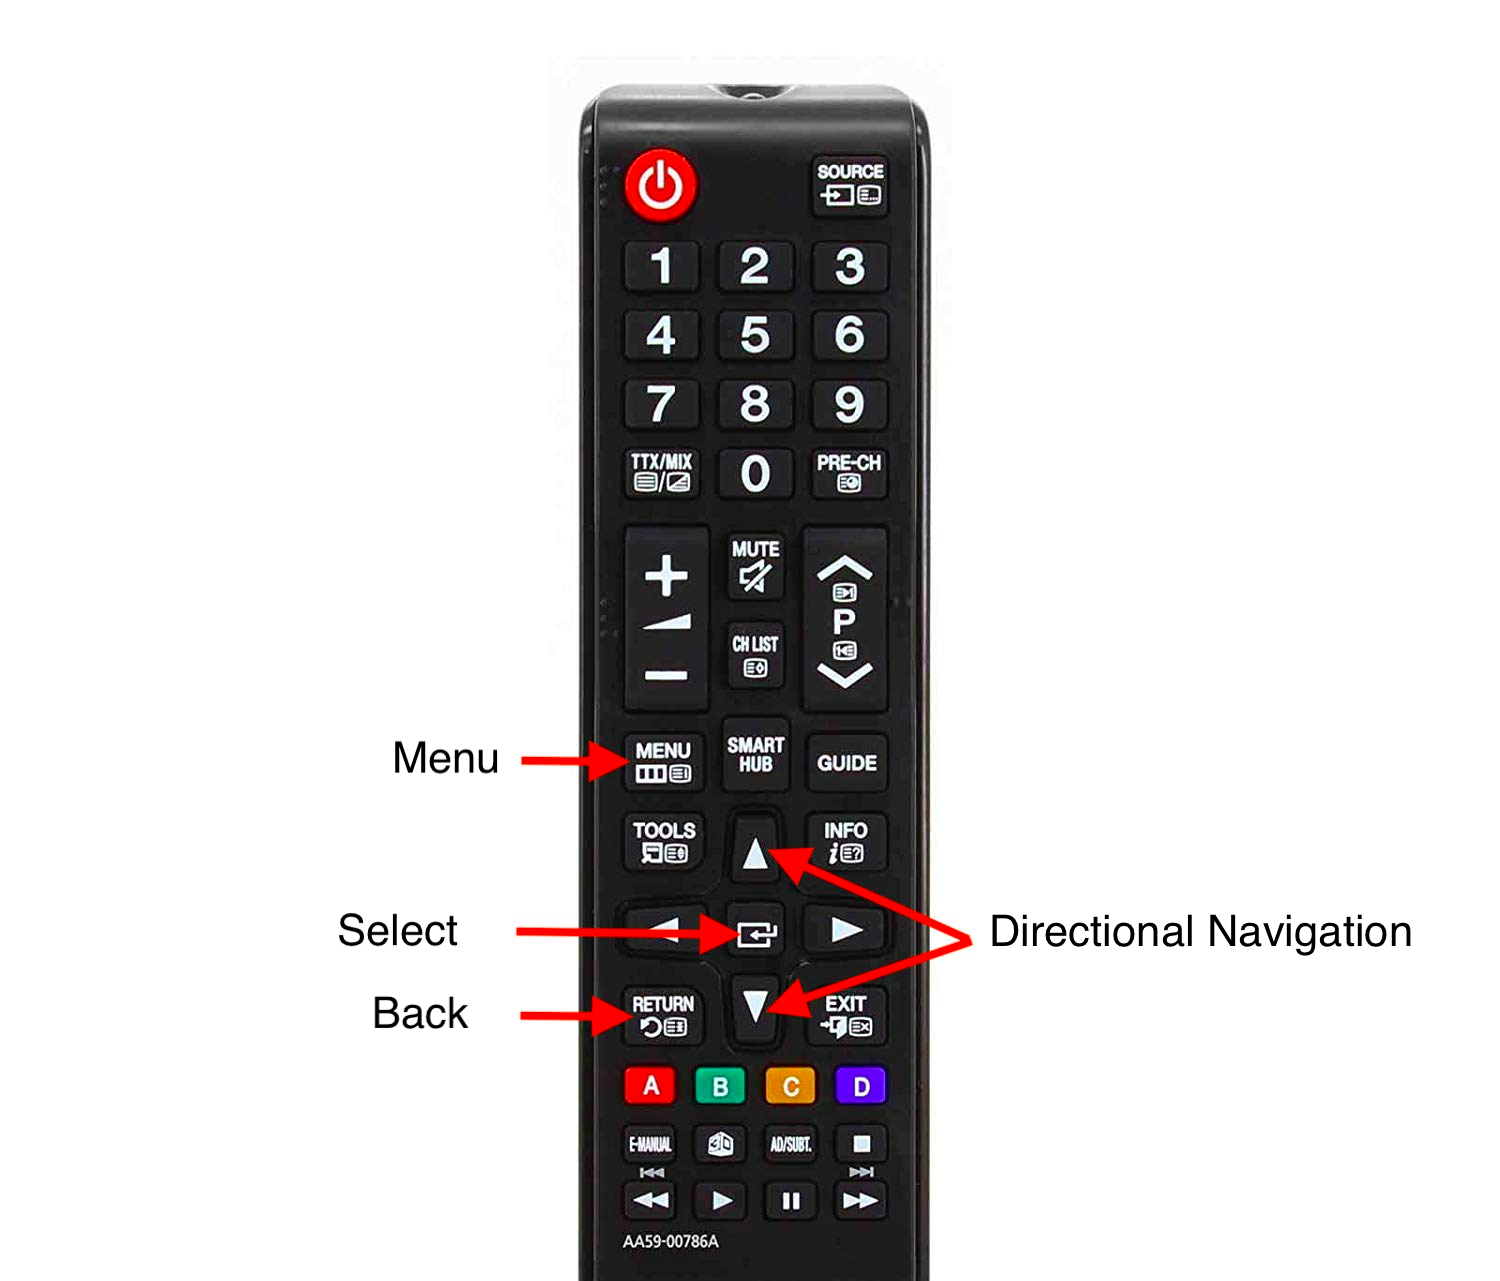 menu button on remote